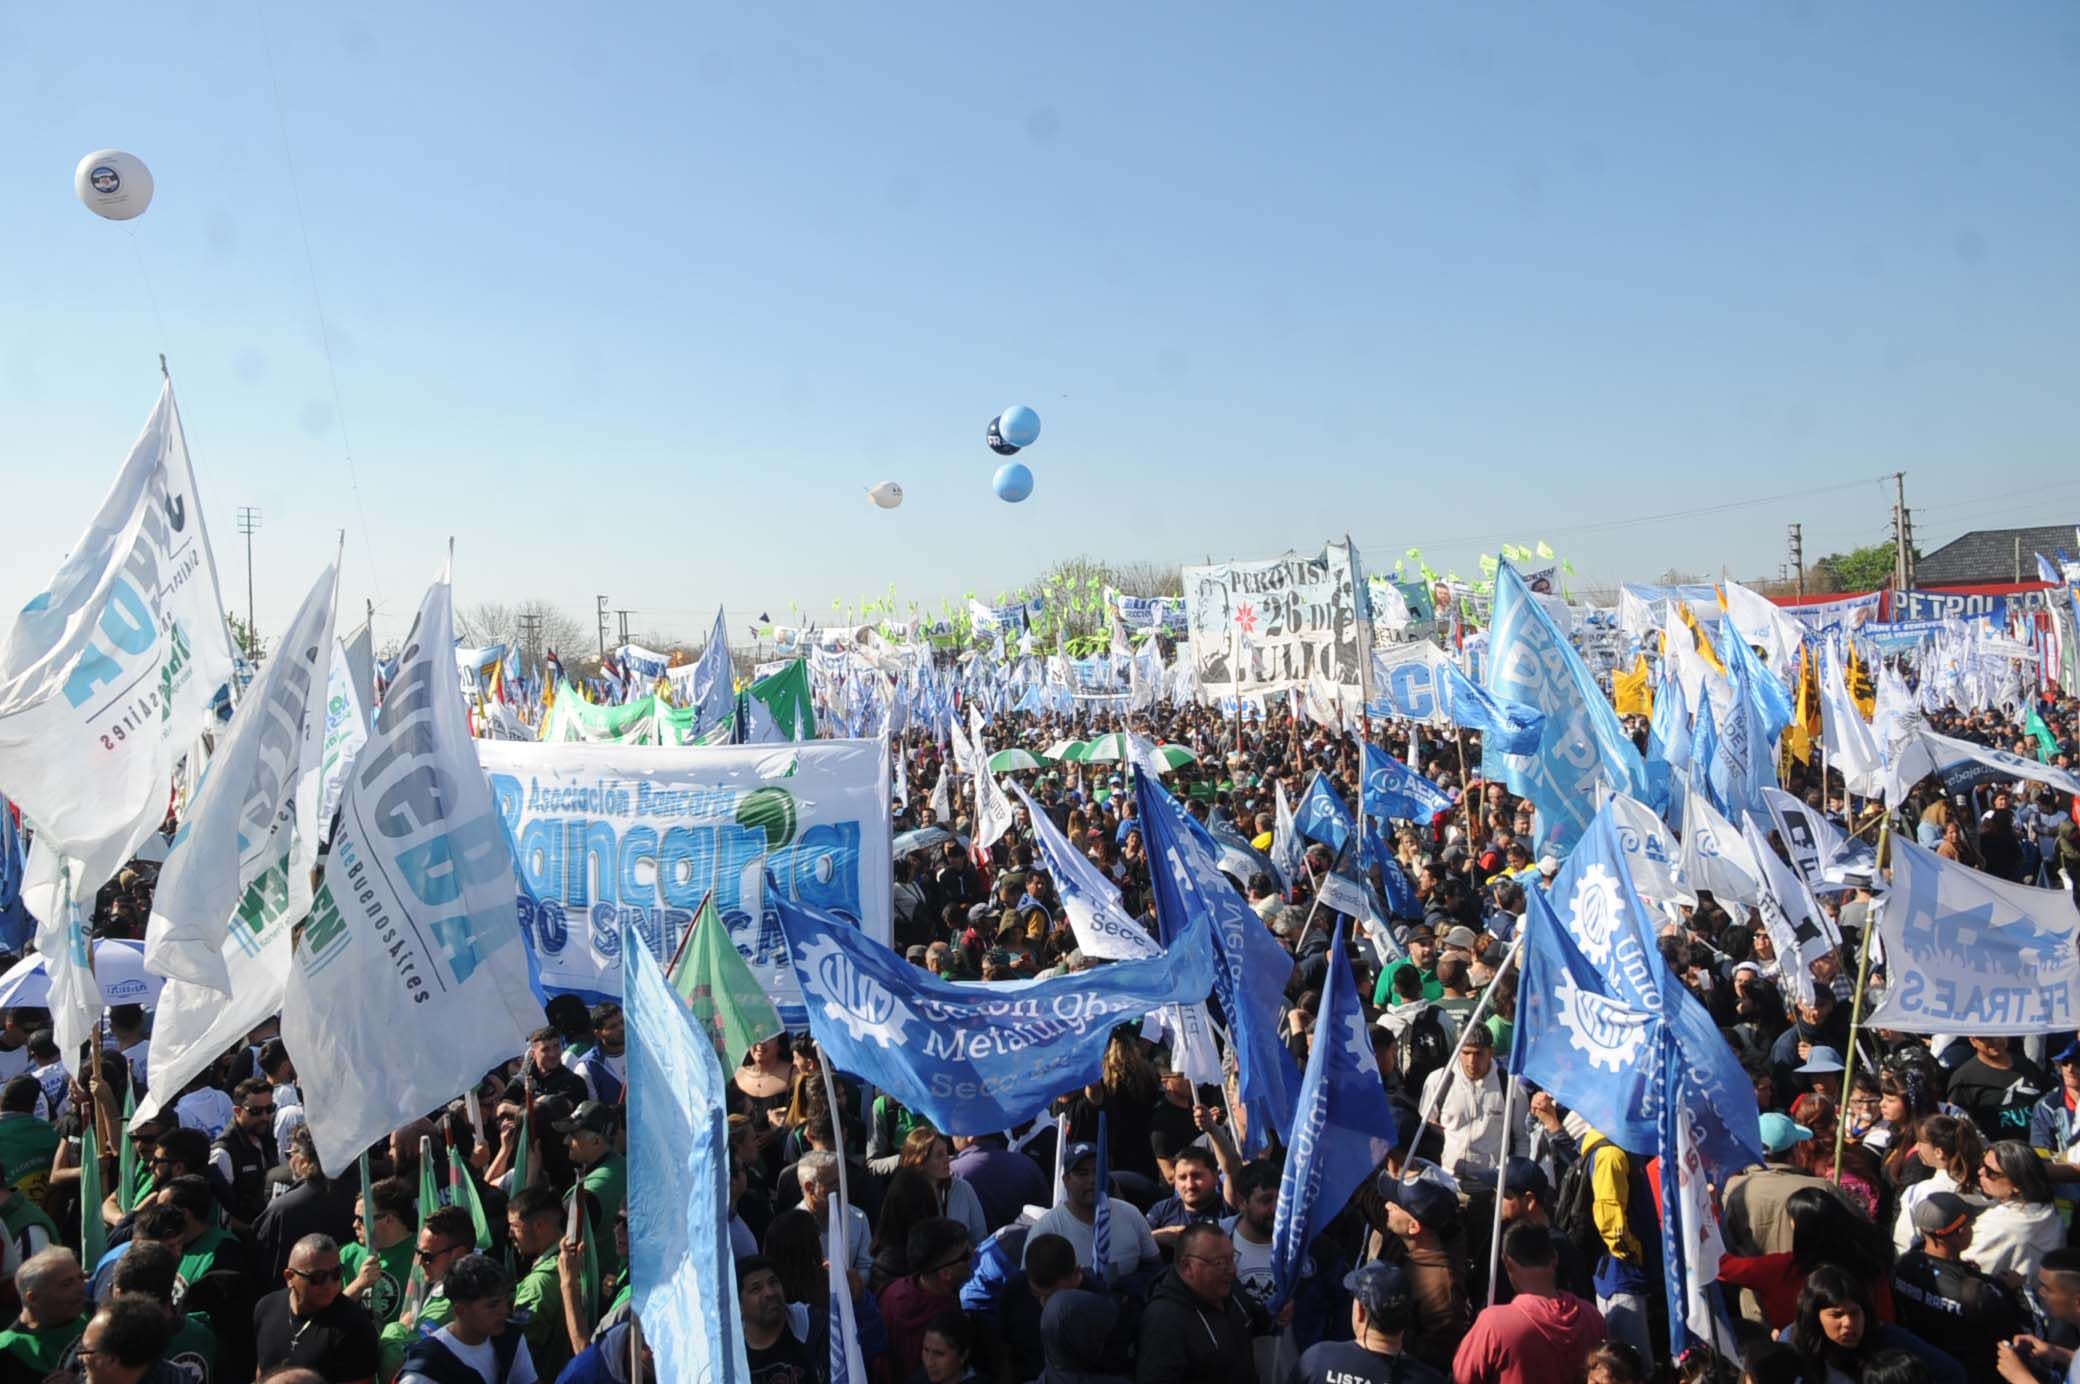 Los gremios y las organizaciones sociales movilizaron a cerca de 30.000 personas a Ensenada para respaldar la candidatura de Massa (Télam)